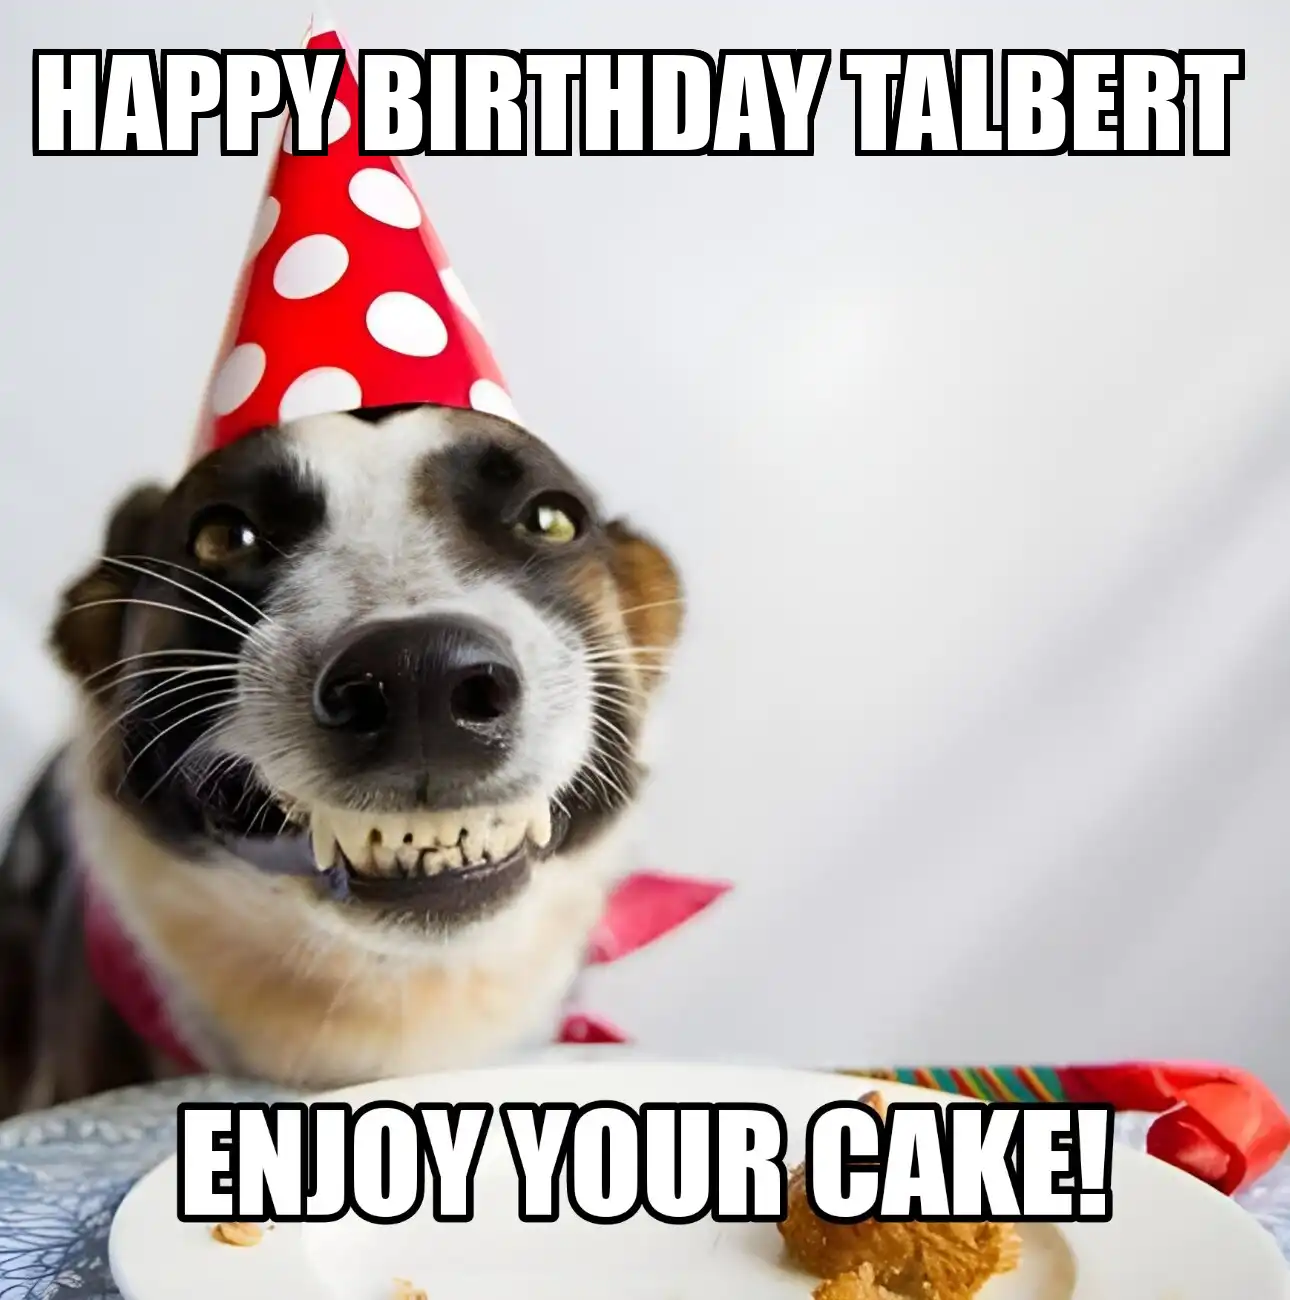 Happy Birthday Talbert Enjoy Your Cake Dog Meme